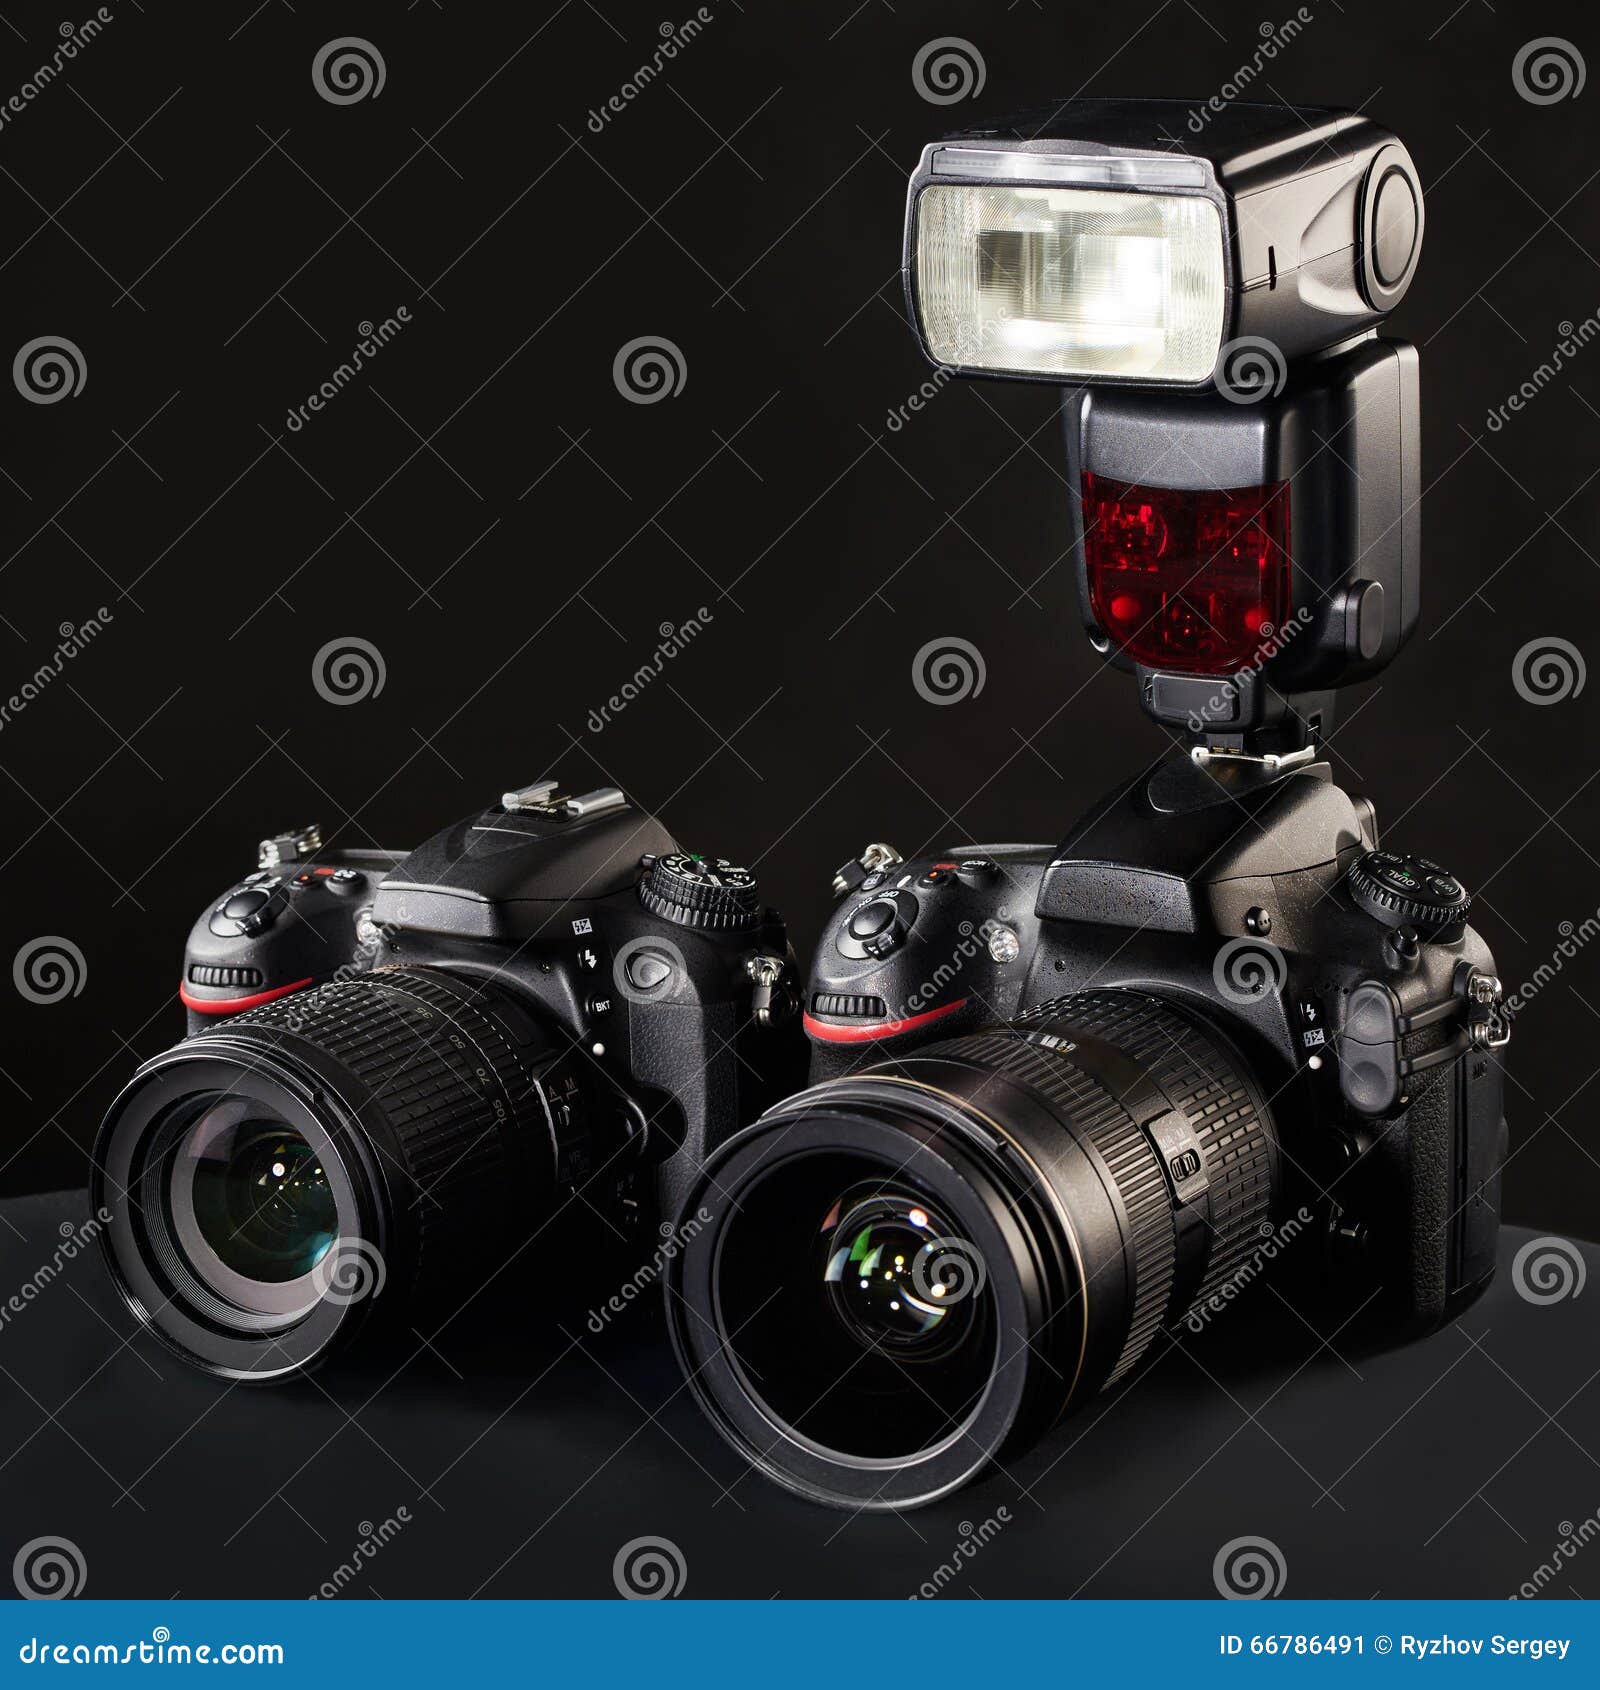 Digital SLR cameras, lens and flash on black. Set of photographs. DSLR cameras, lens and flash